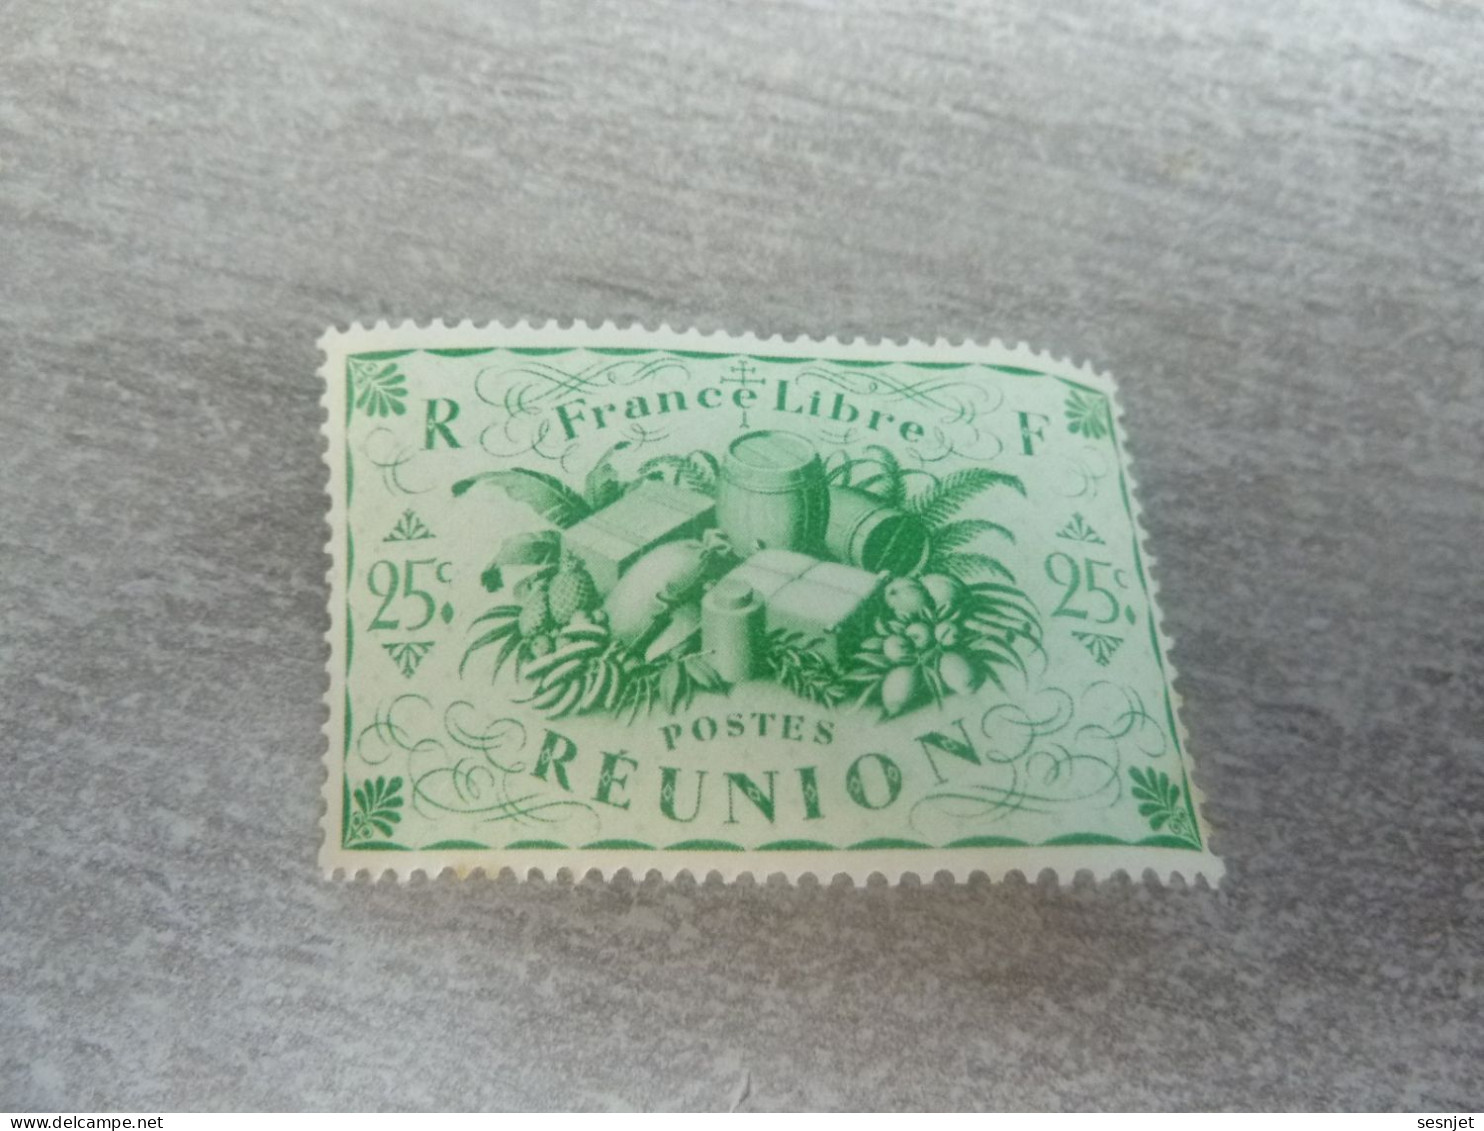 Série De Londres - France-Libre - Réunion  - 25c. - Yt 235 - Vert-jaune - Neuf Sans Trace De Charnière - Année 1943 - - Nuovi